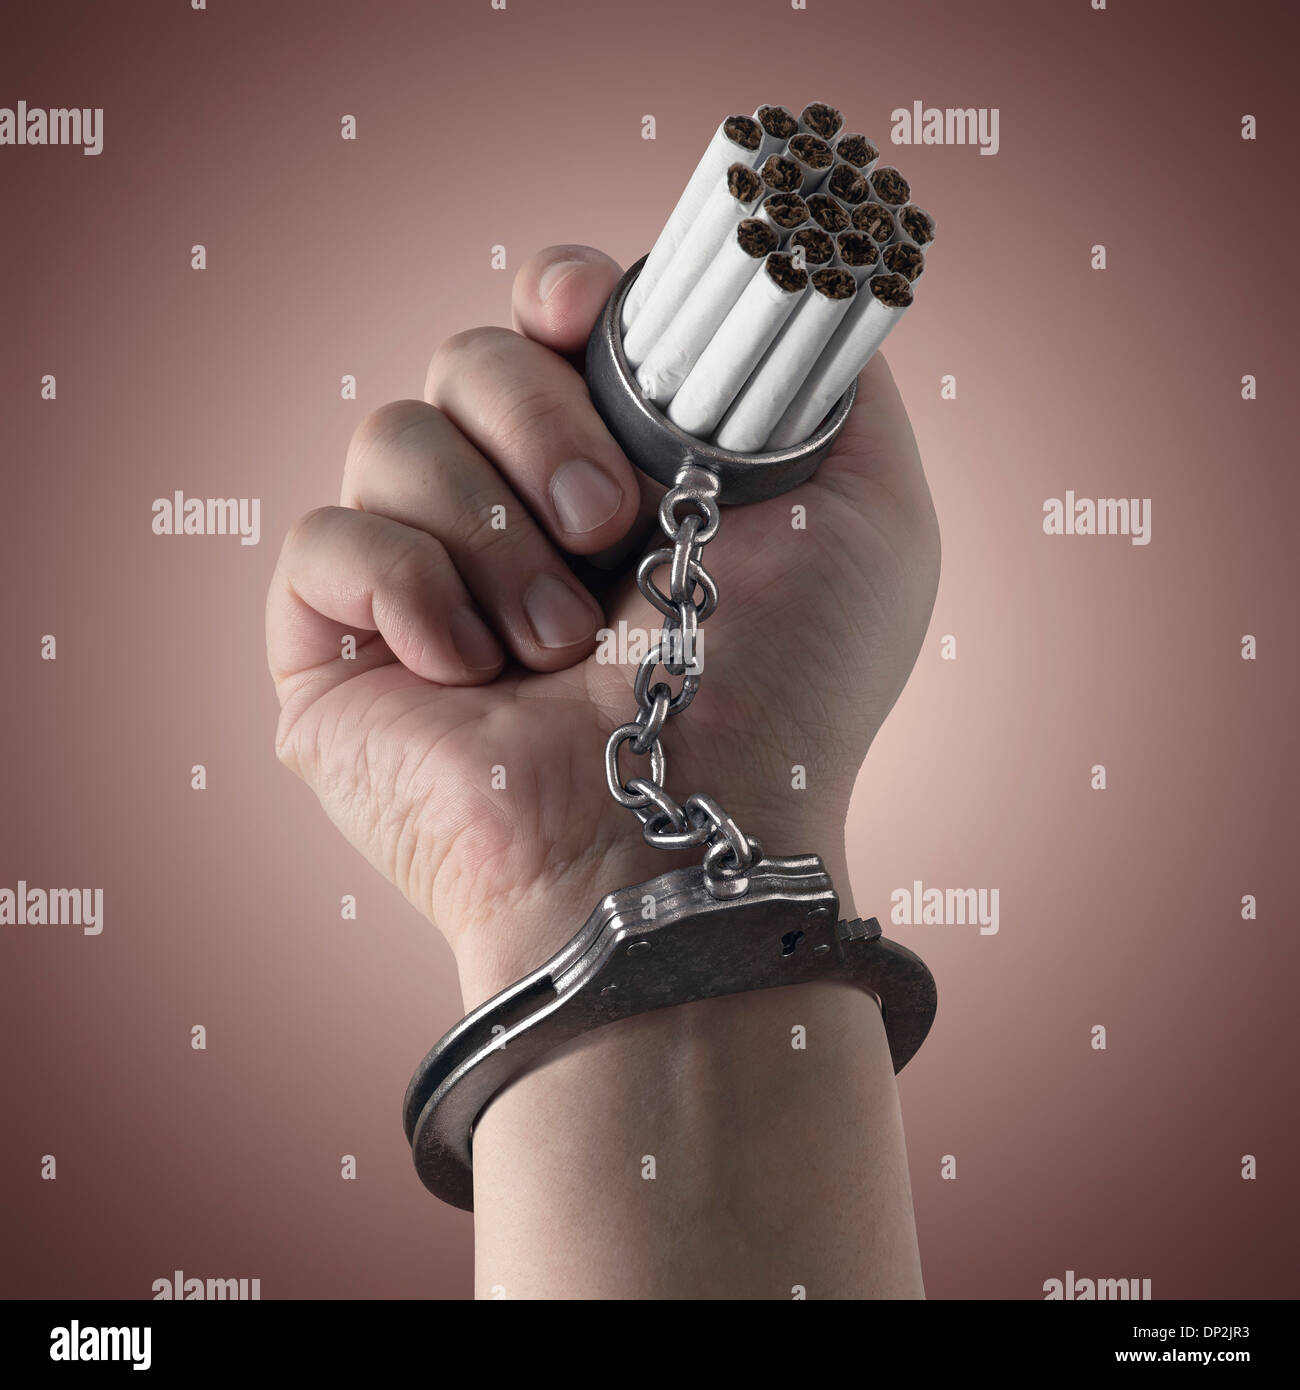 La dépendance au tabac, conceptual image Banque D'Images